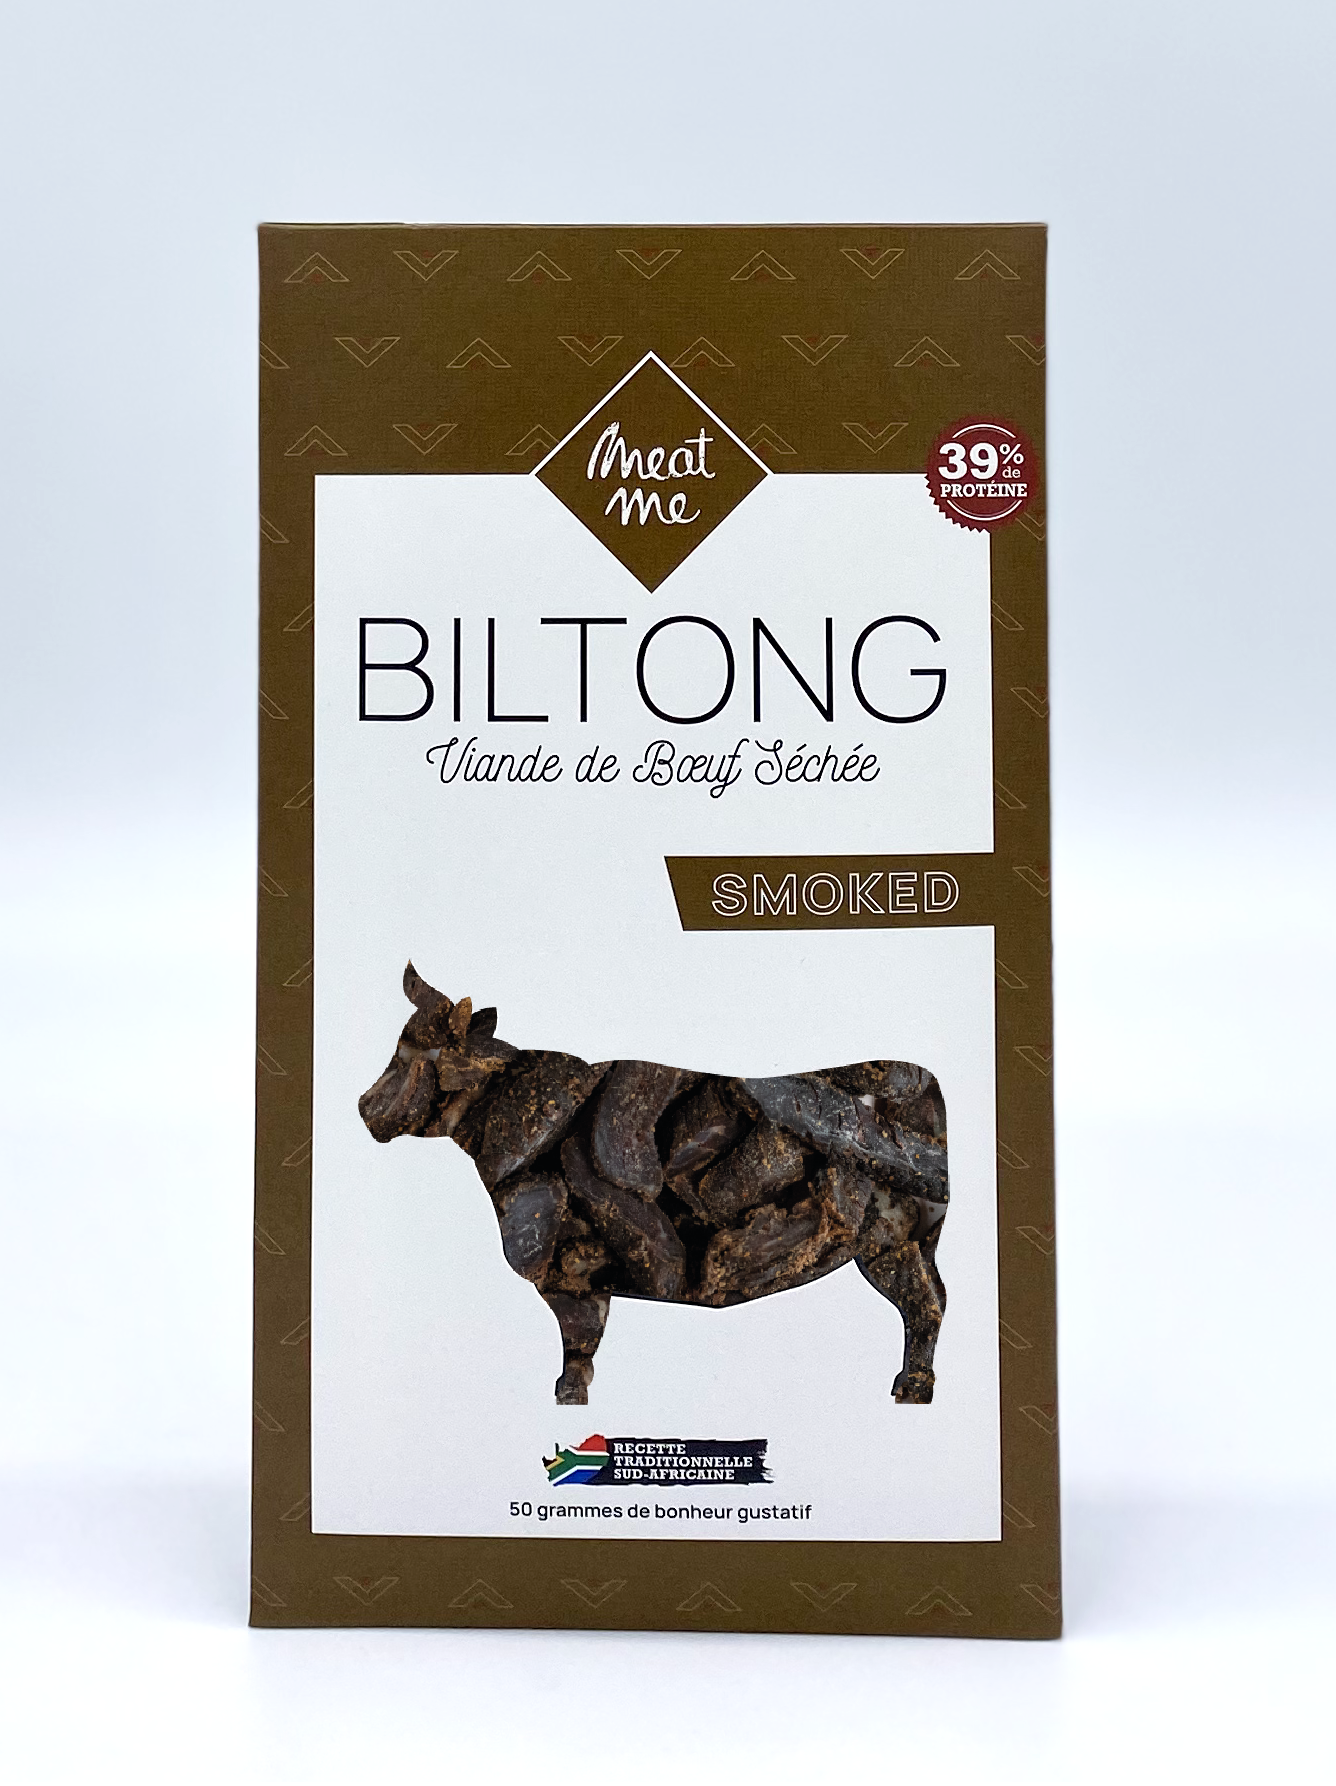 Viande de boeuf séchée et marinée puis fumée. Le Biltong est une tradition culinaire originaire d'Afrique du sud.